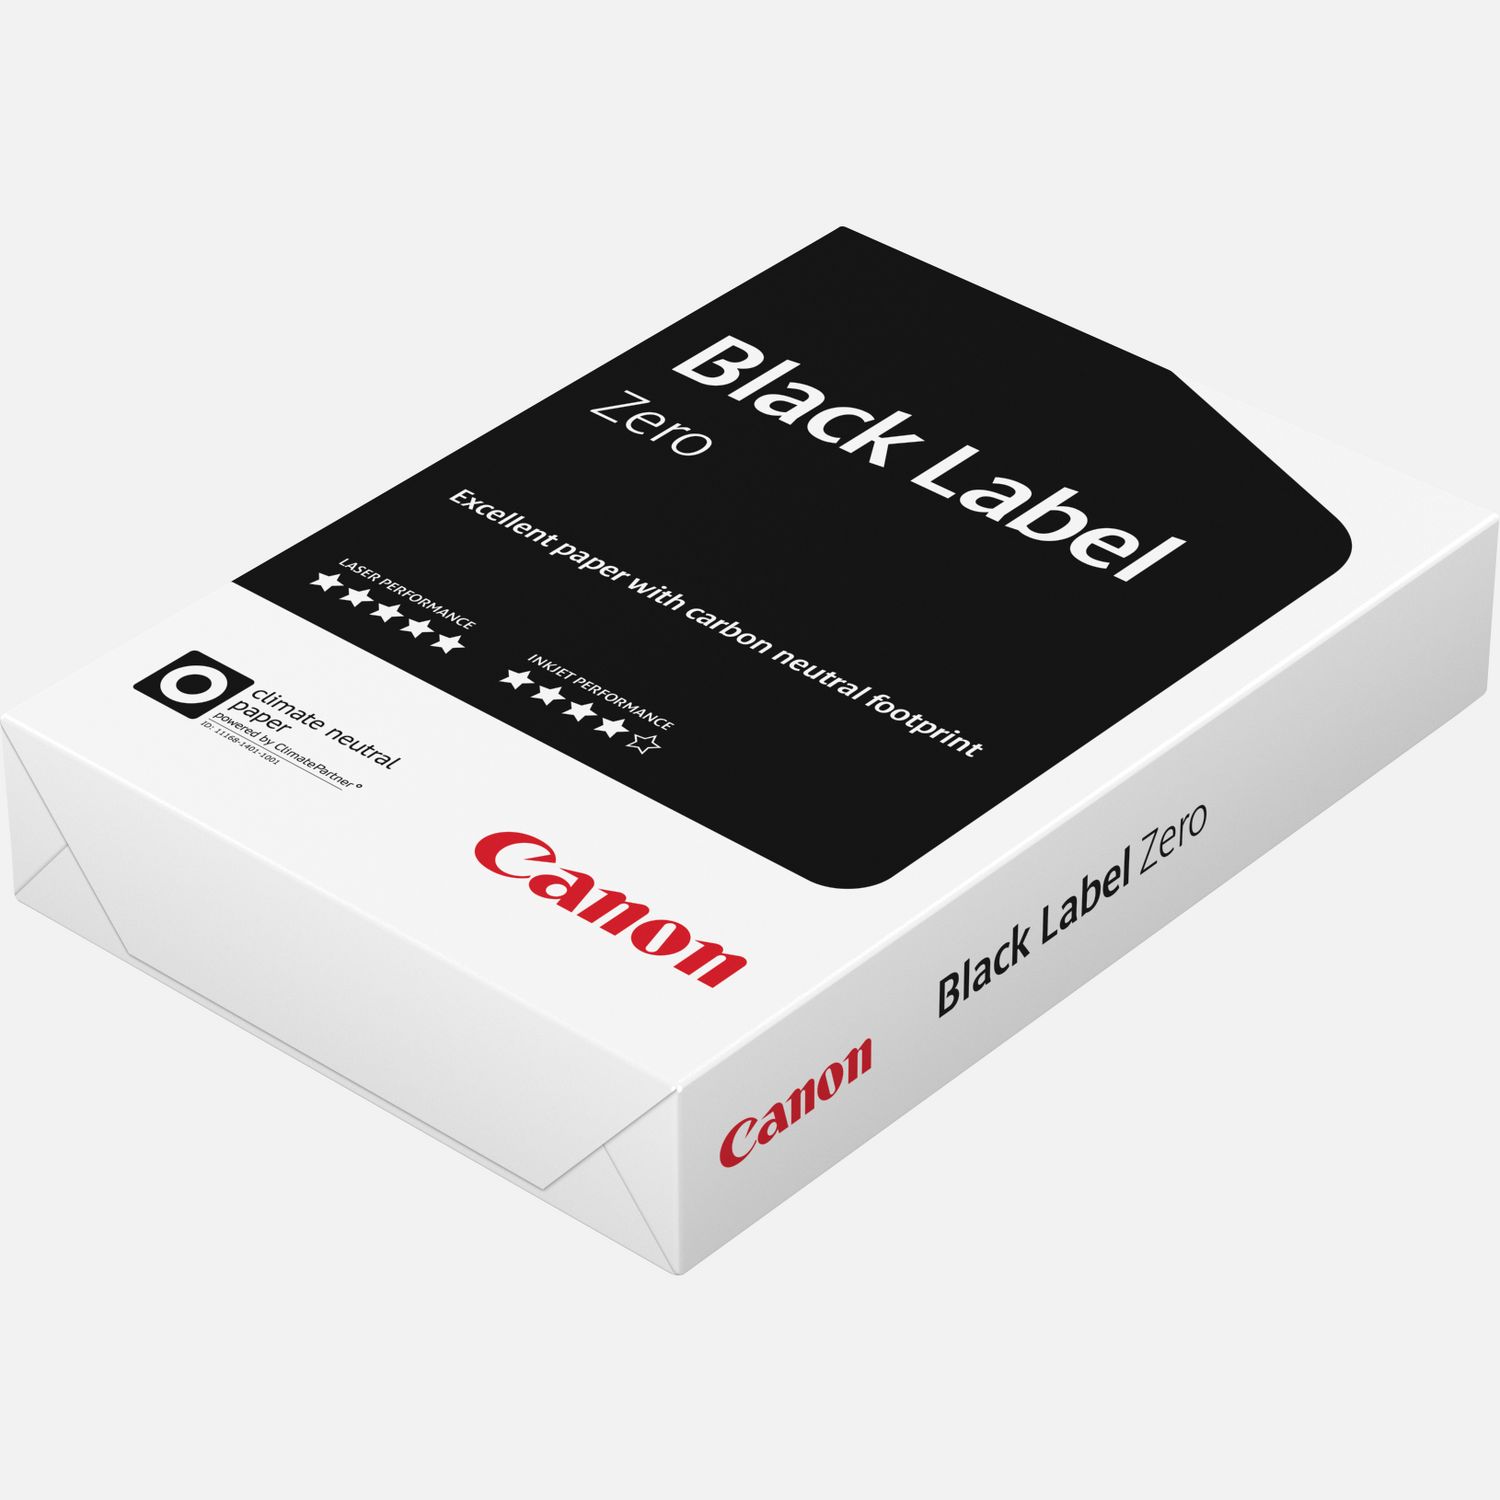 Bancale Carta per fotocopie Canon Black formato A3 – 75 gr.